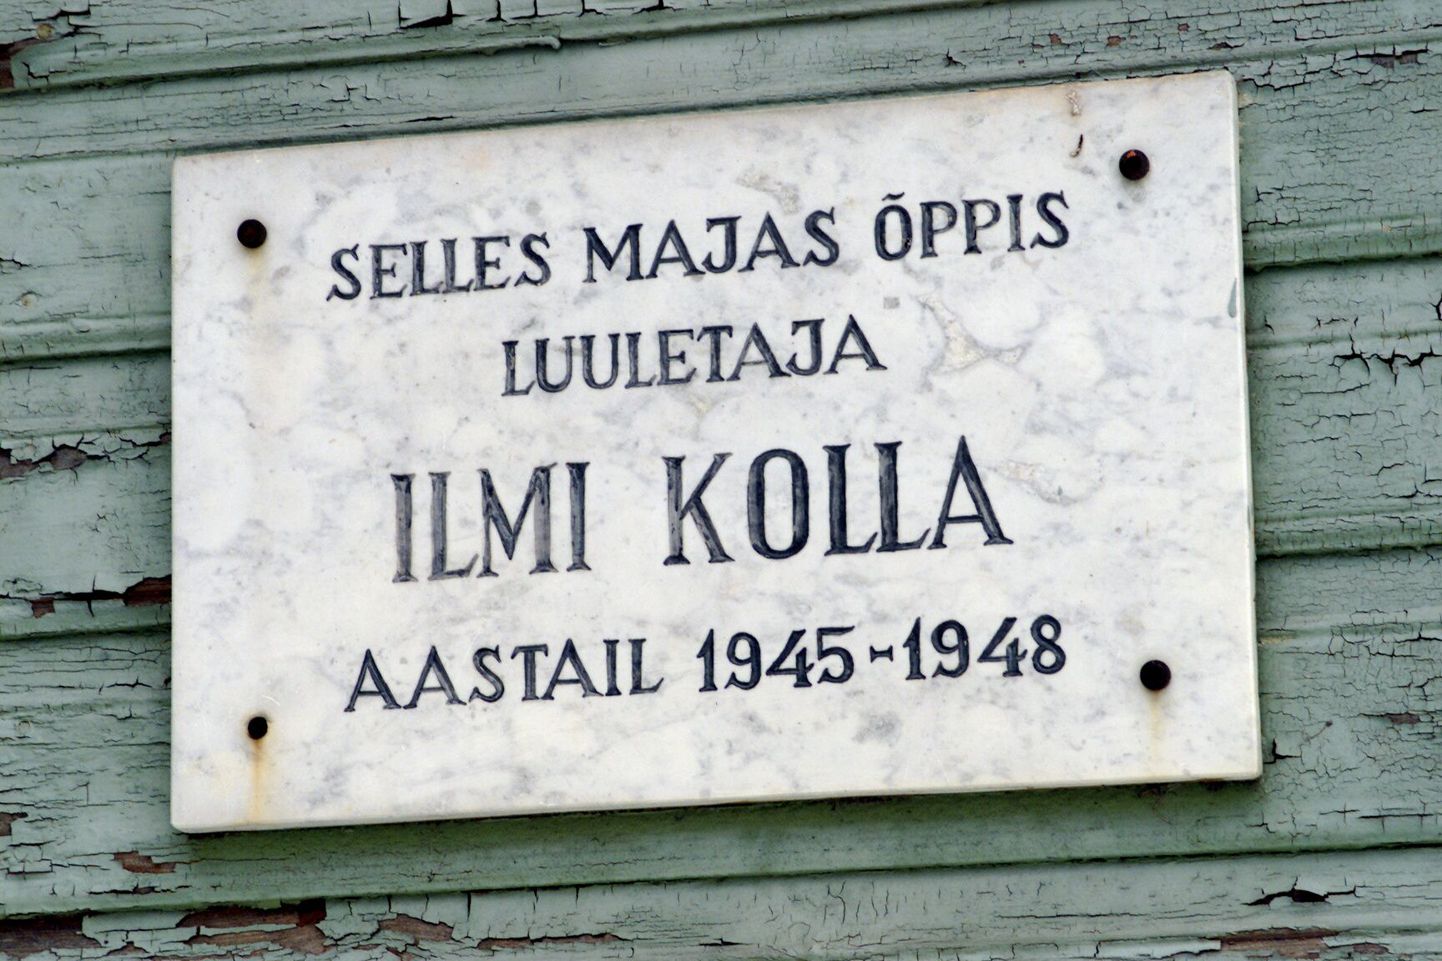 Surju vanas koolimajas on õppinud luuletaja Ilmi Kolla. Foto on illustreeriv.